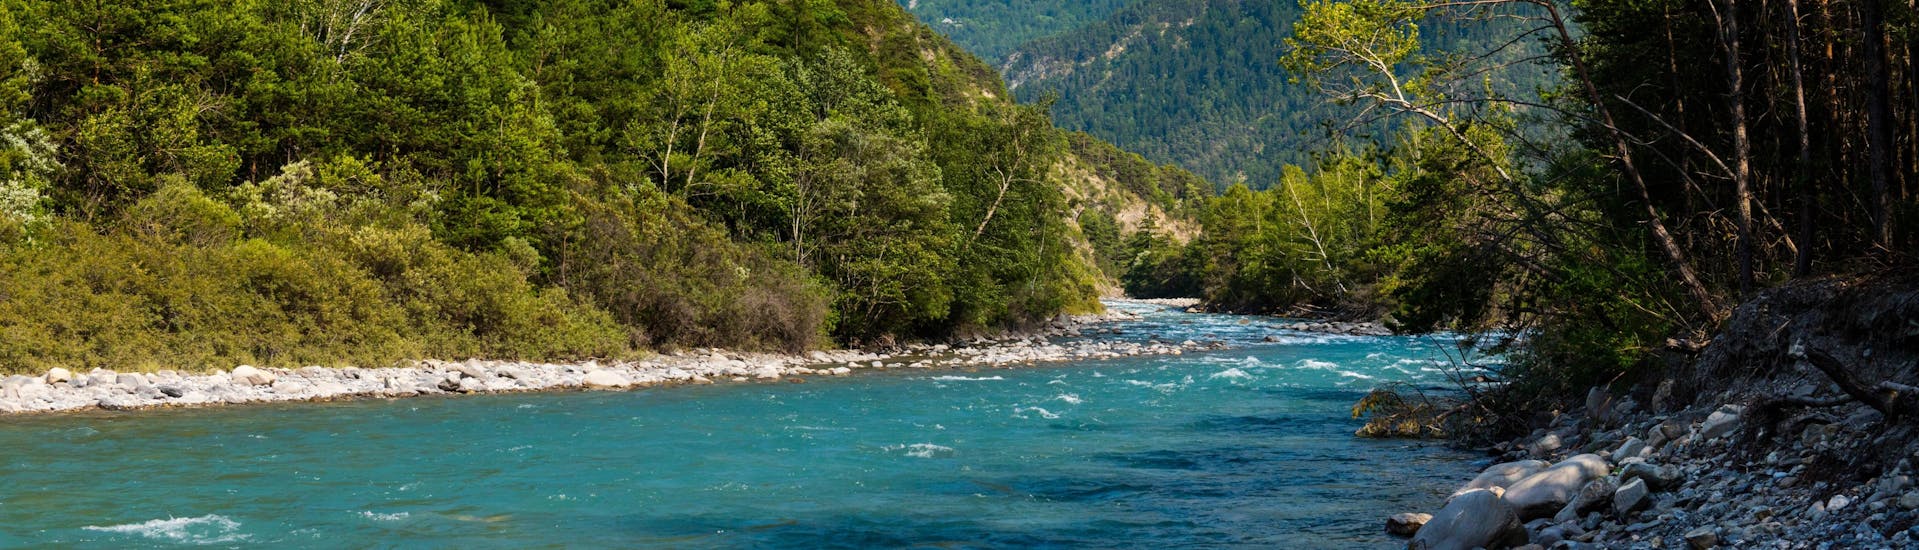 La rivière Ubaye dans les Alpes du Sud, l'une des plus célèbres destinations de rafting en France.